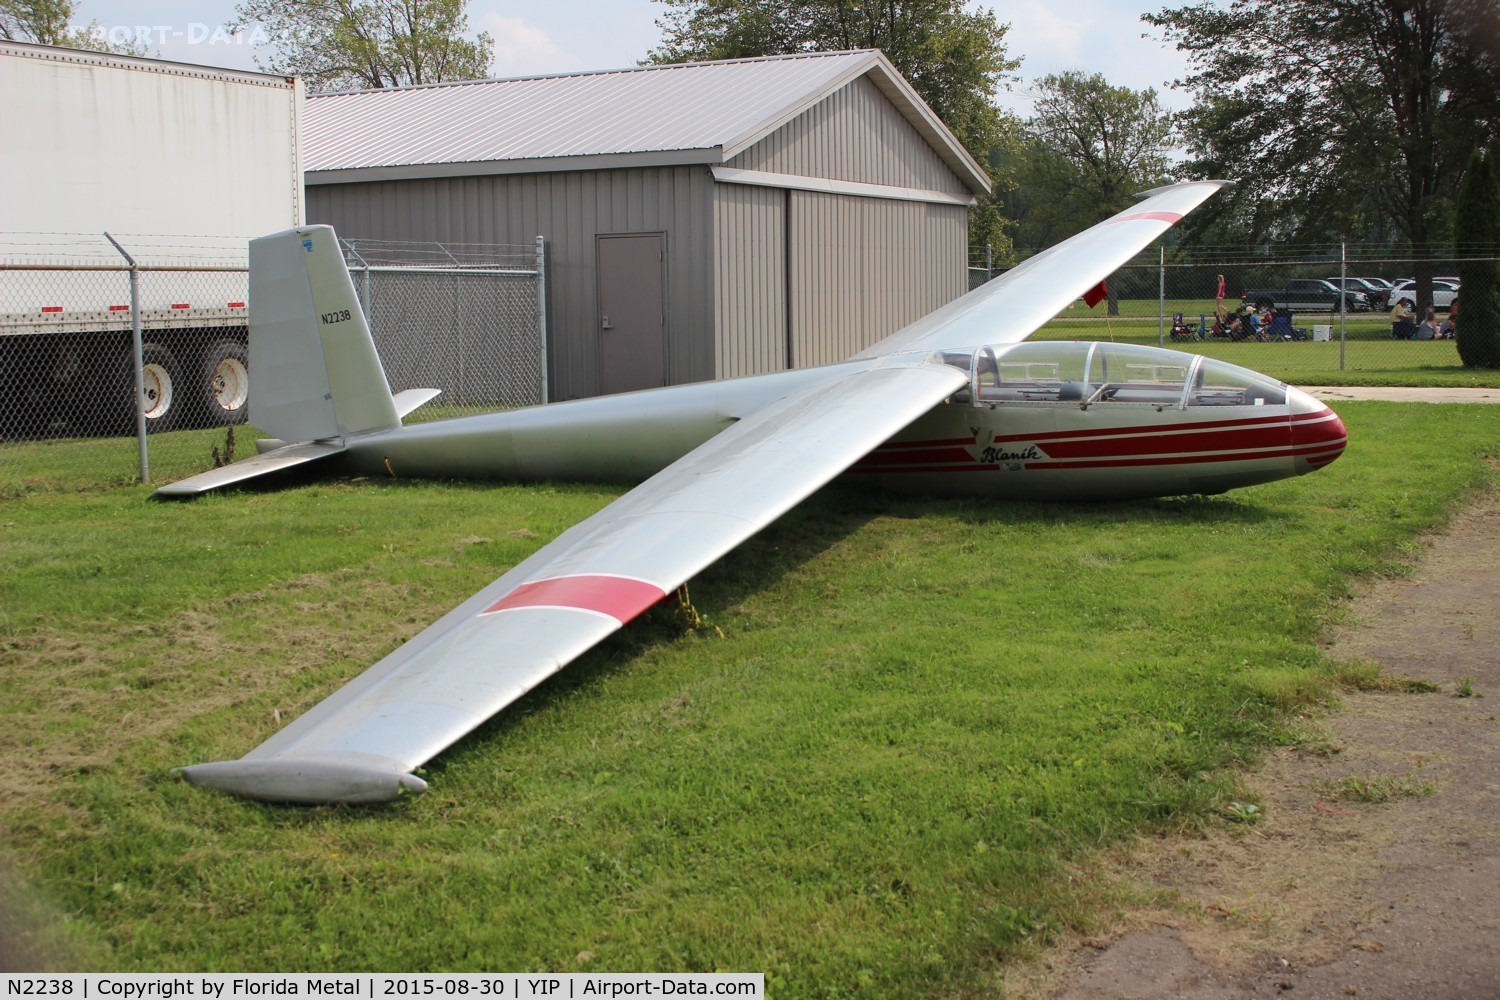 N2238, 1971 Let L-13 Blanik C/N 174930, glider